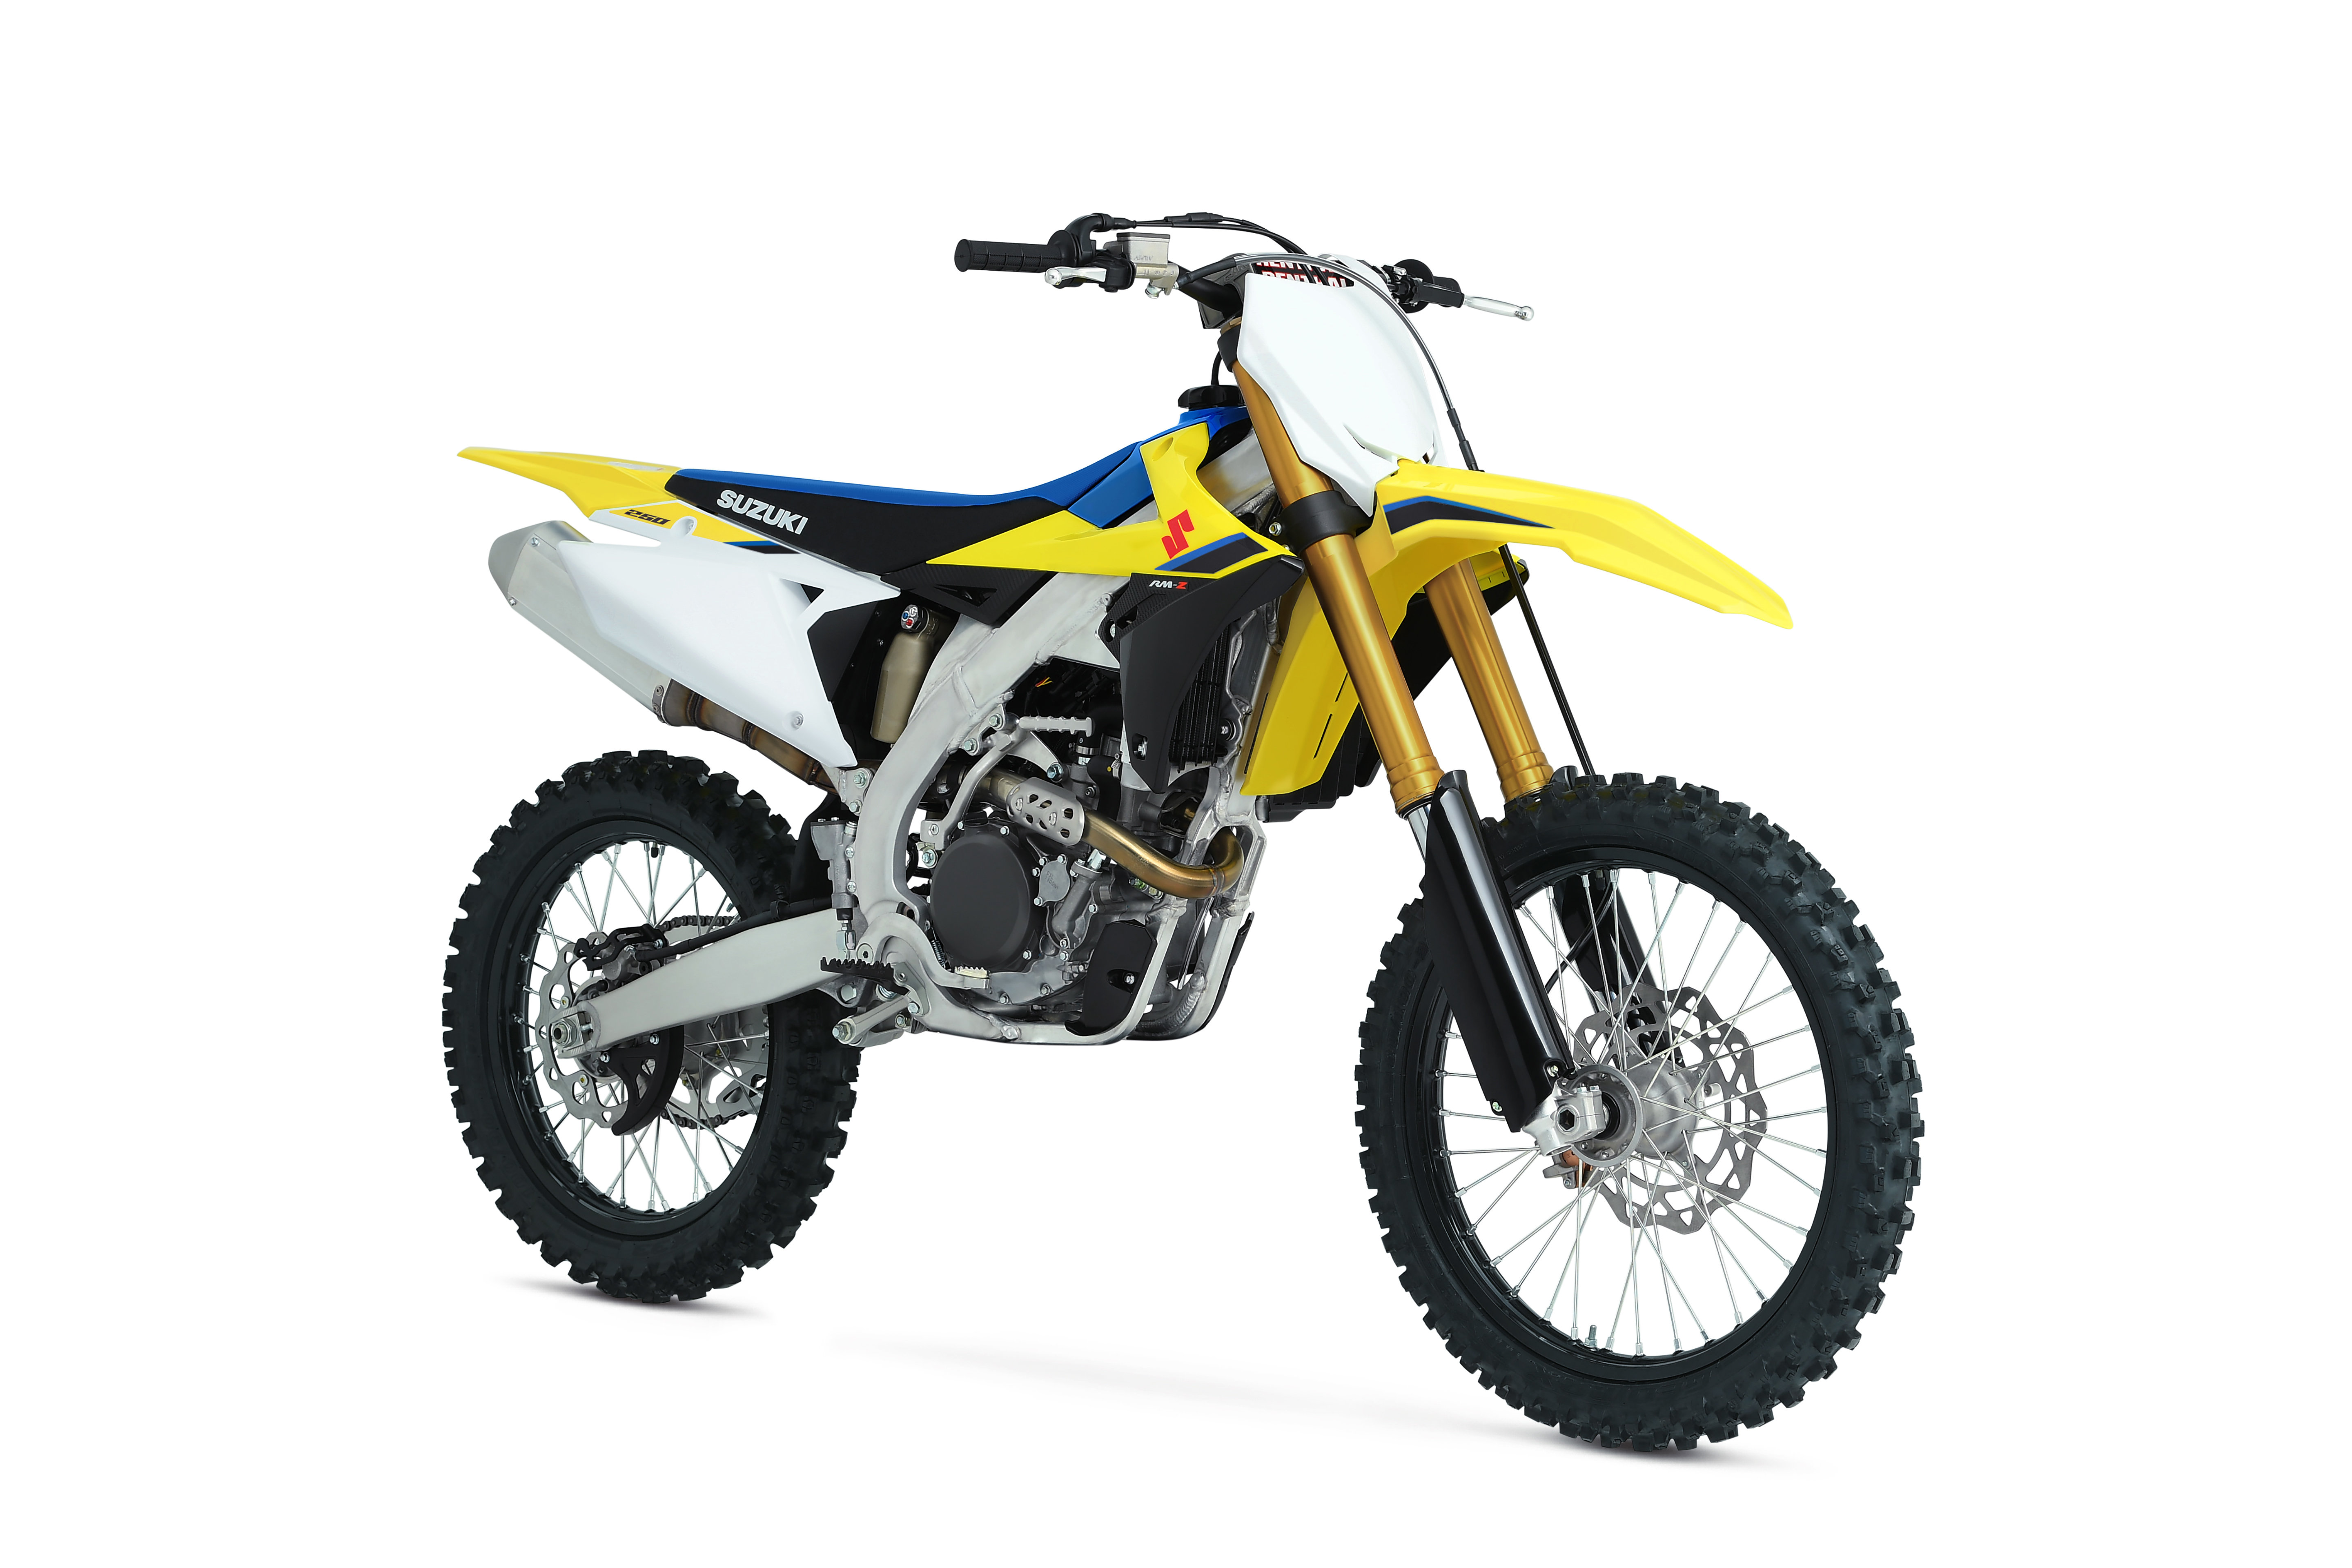 Nové motokrosy Suzuki 2020